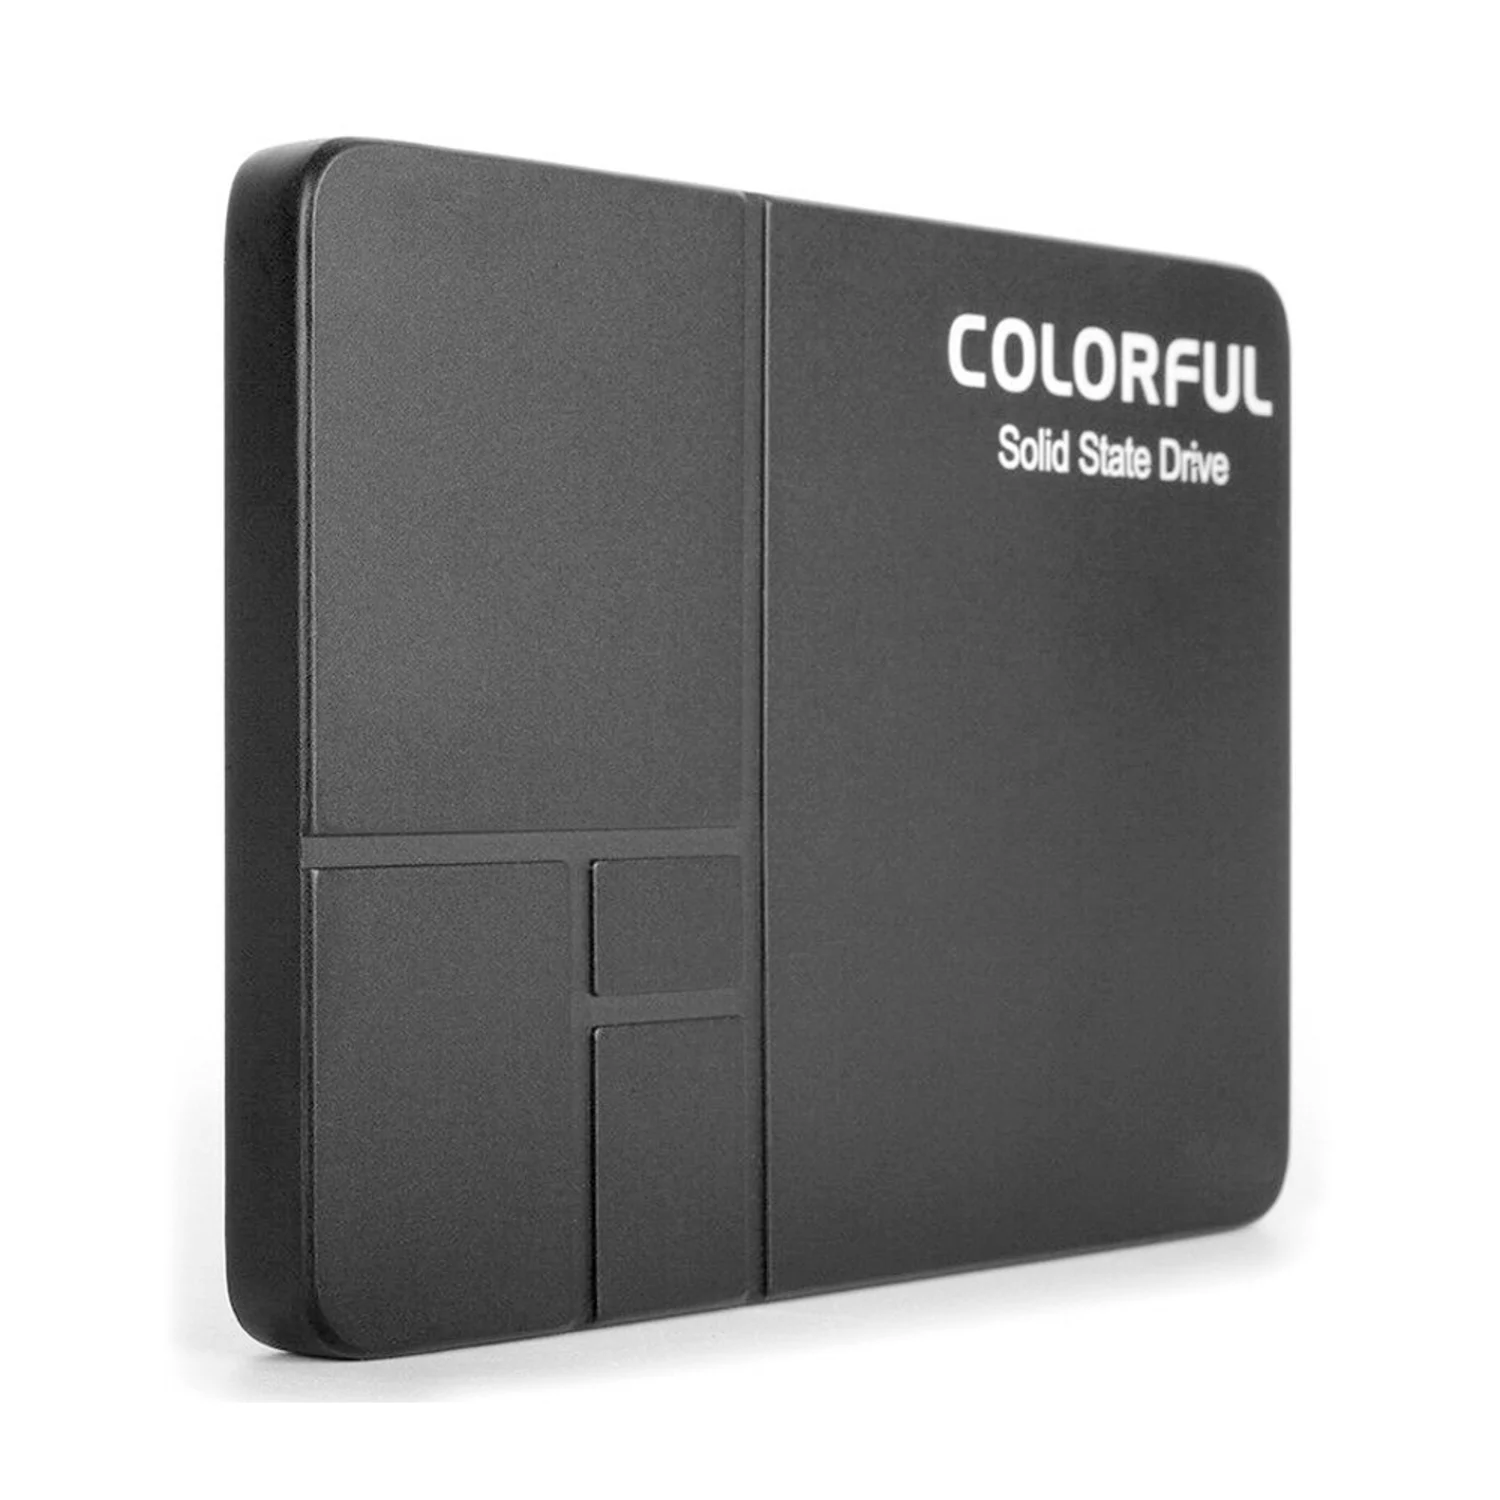 SSD Colorful SL300 120GB 2.5" SATA 3